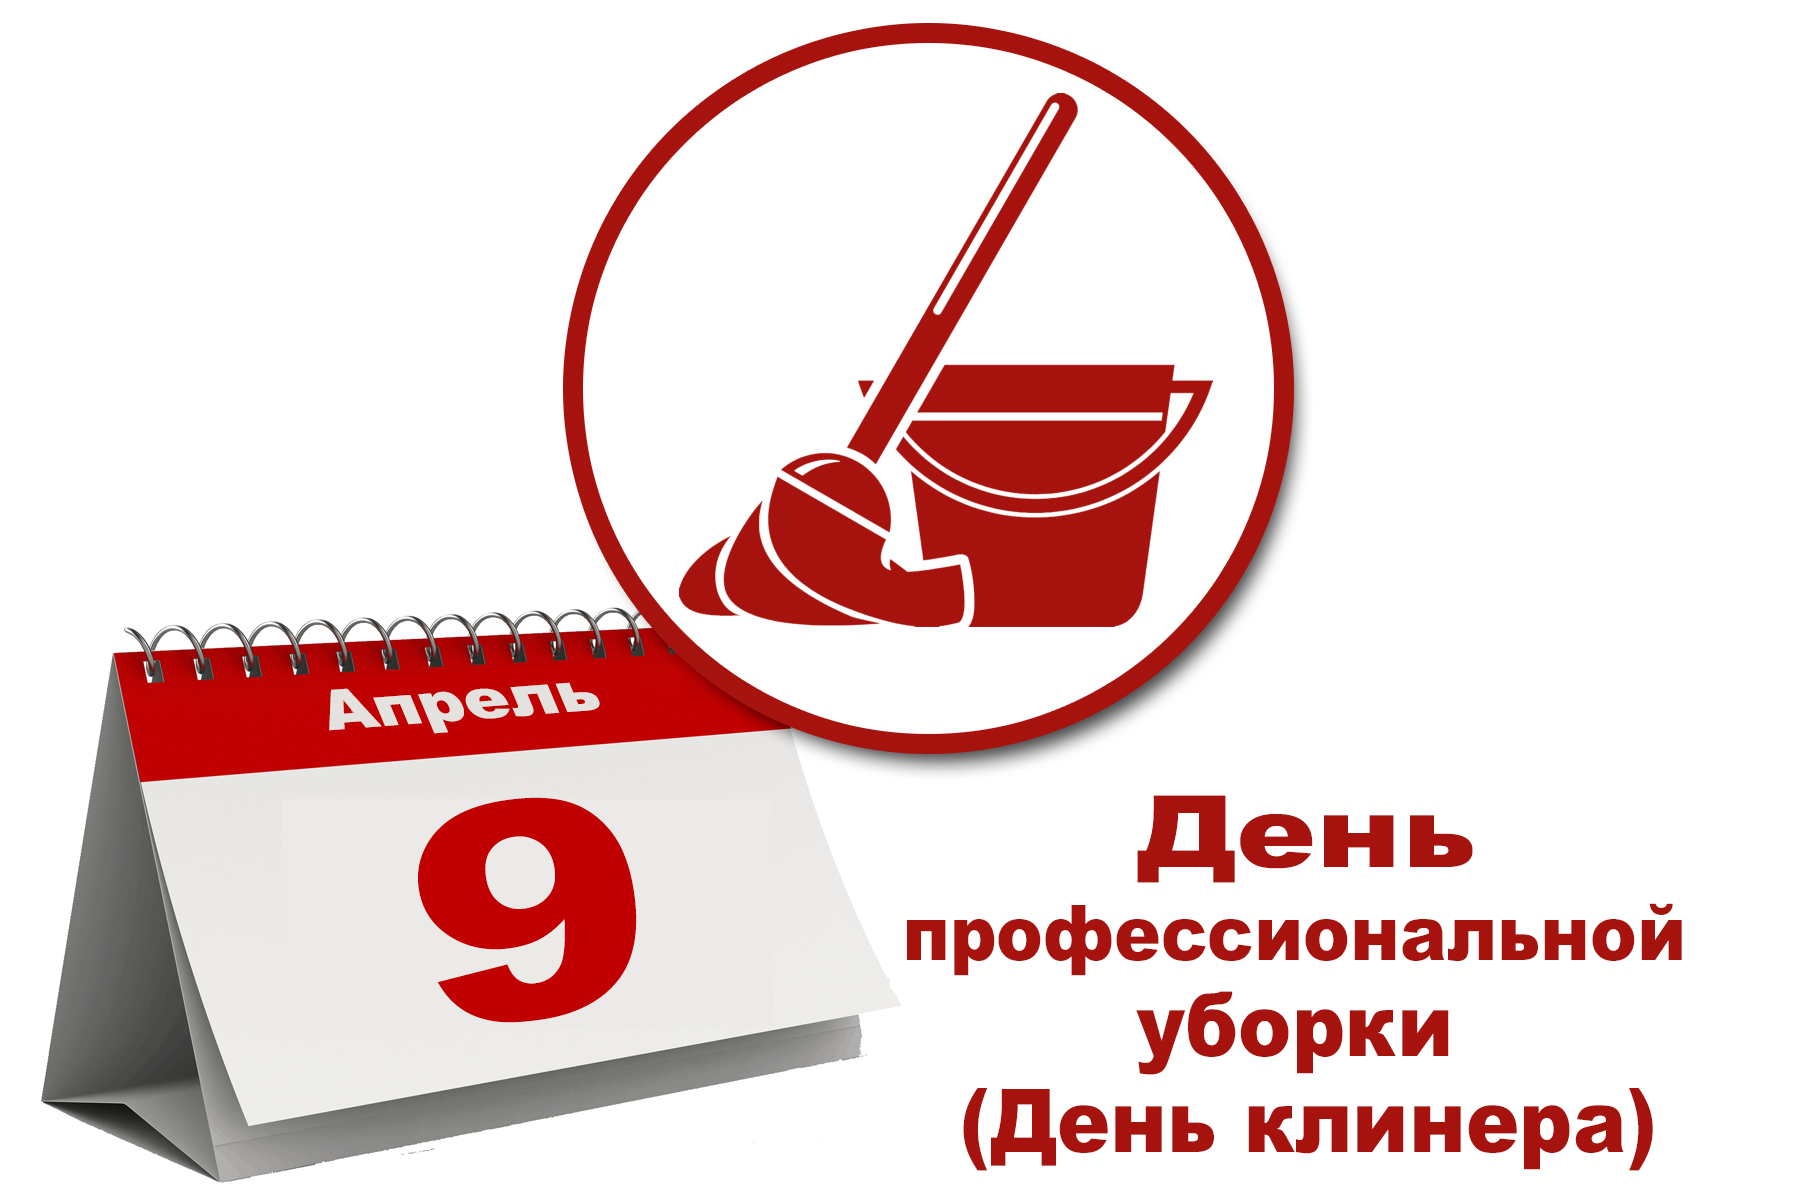 09 АПРЕЛЯ - День профессиональной уборки (День клинера)!